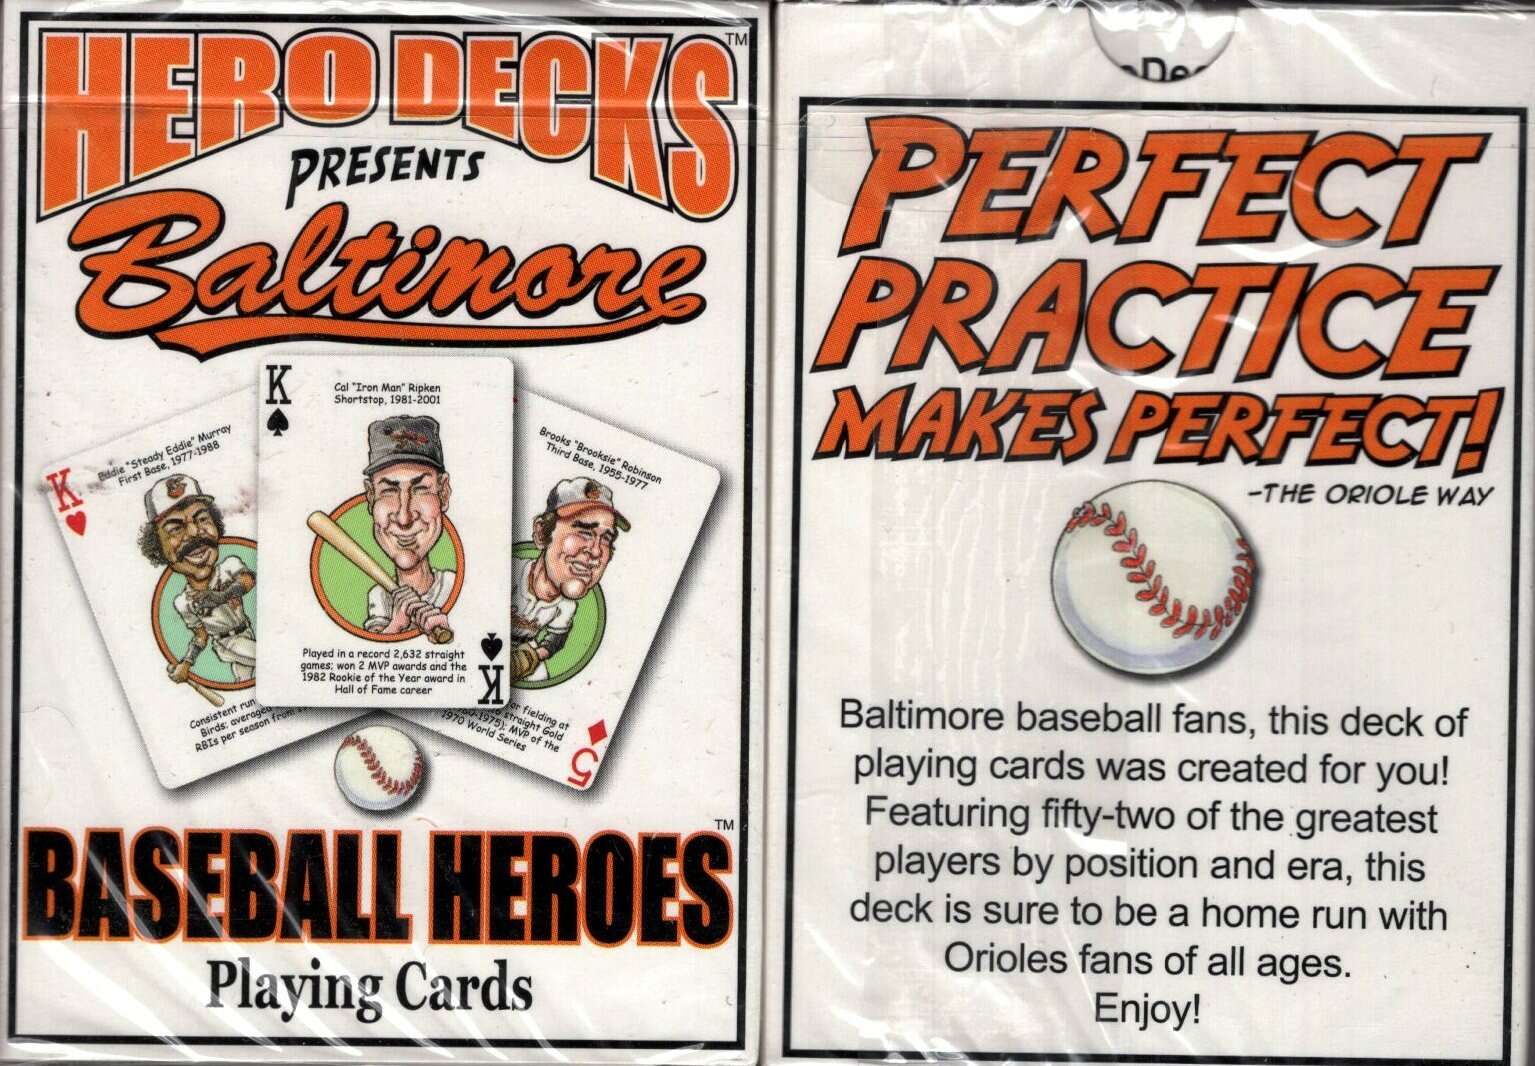 PlayingCardDecks.com-Baltimore Baseball Heroes Playing Cards